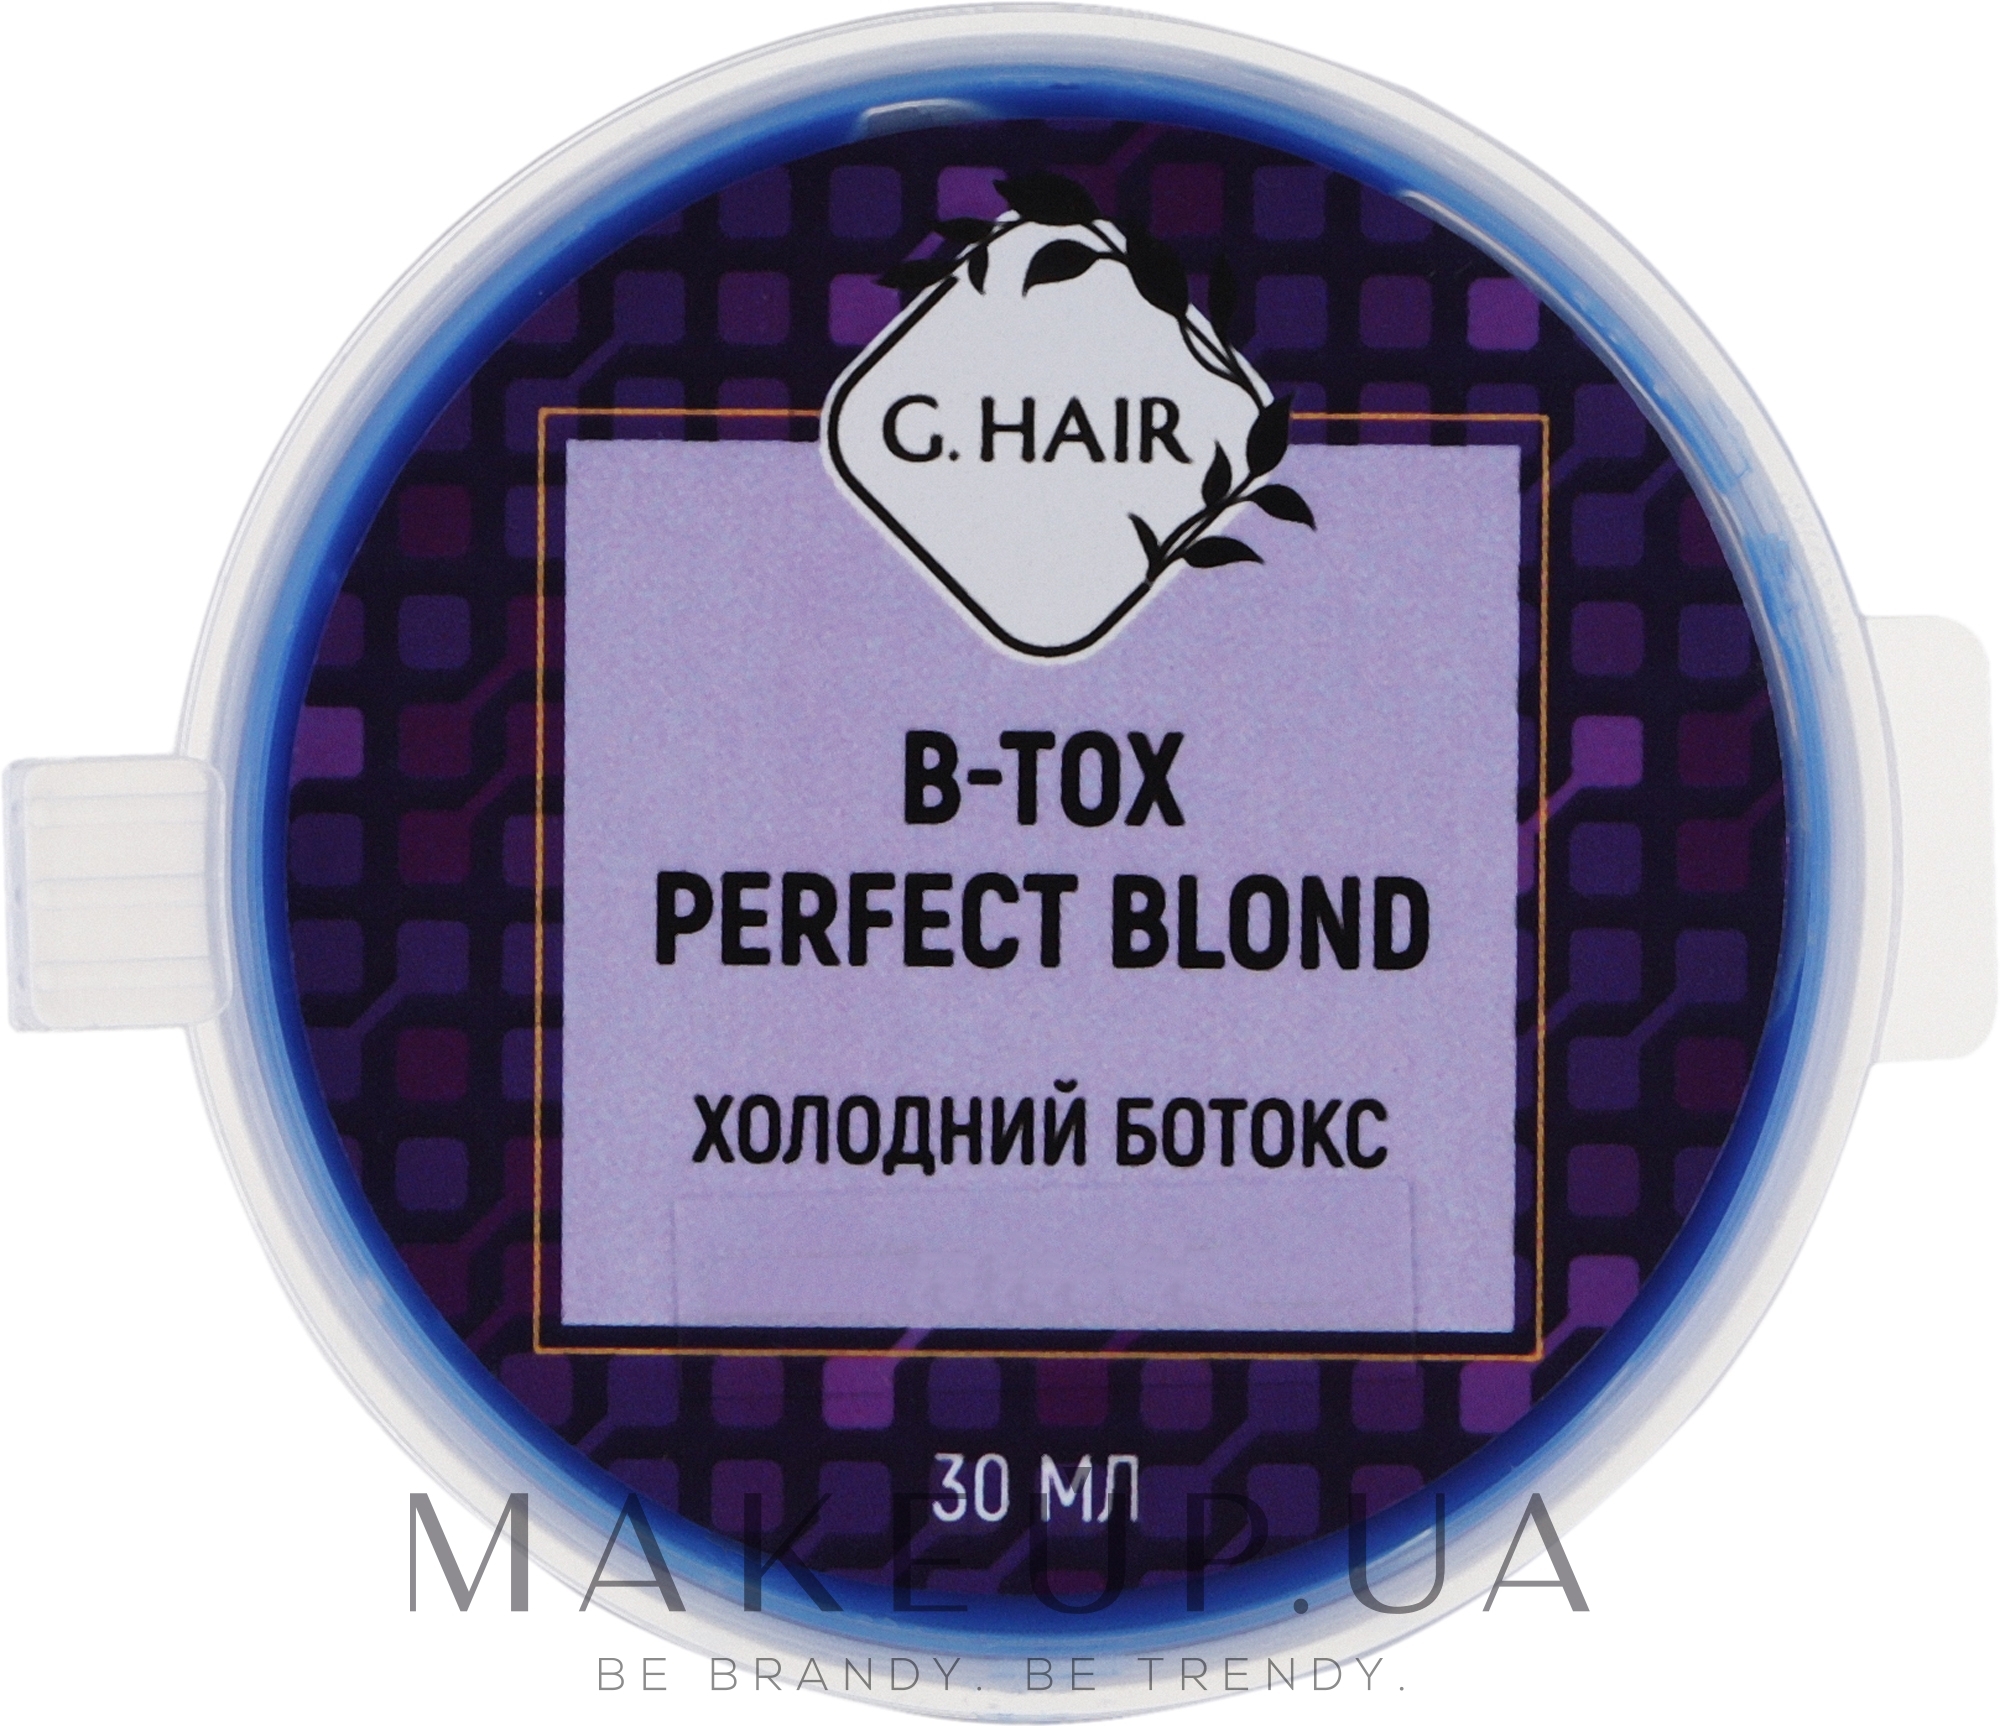 Оттеночный ботокс для восстановления волос - Inoar G-Hair B-tox Perfect Blond — фото 30g